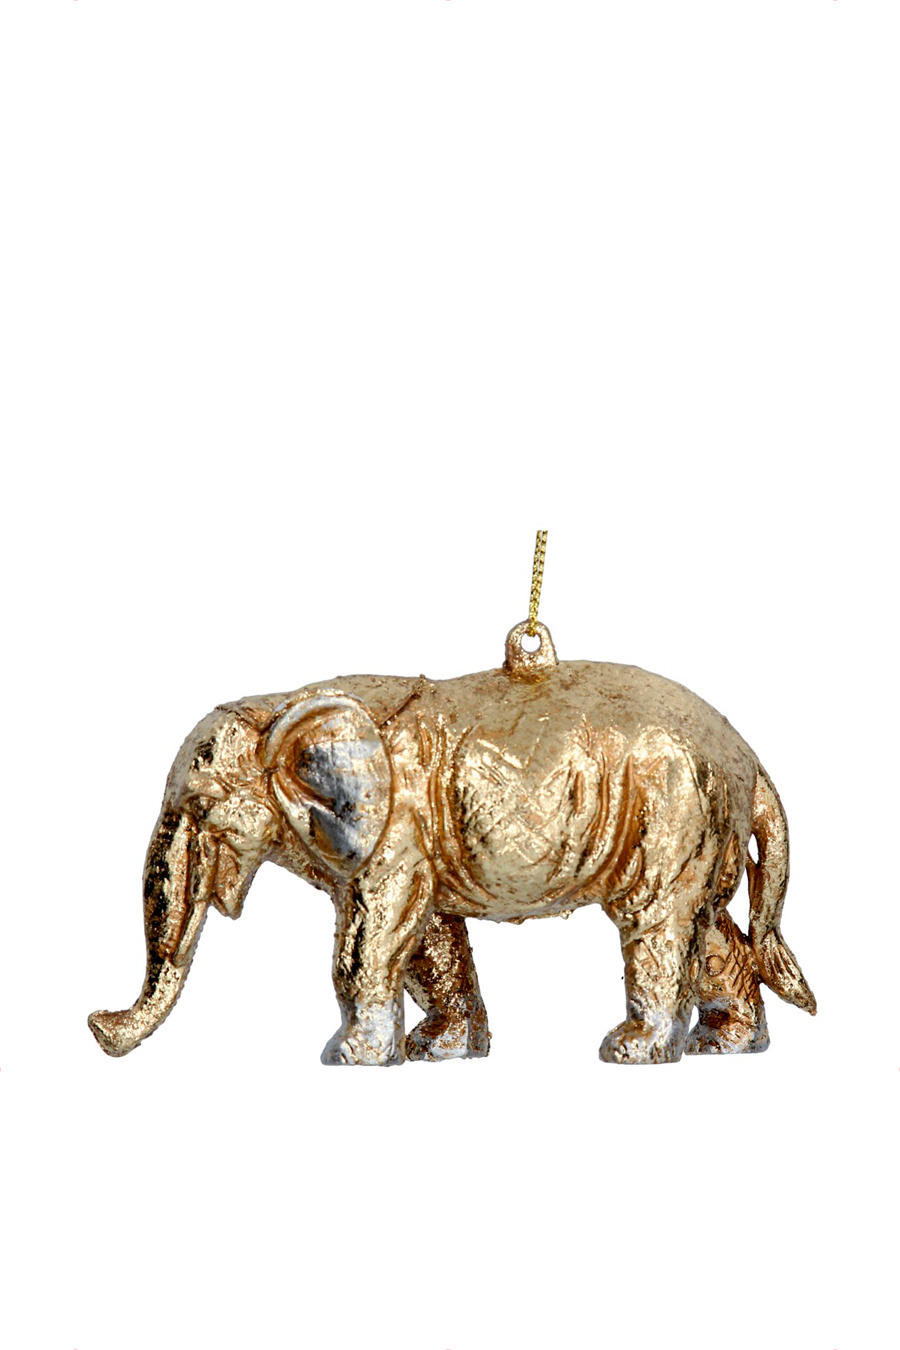 Gisela Graham Елочная игрушка "Слон" 11 см (цвет ), артикул 10852 | Фото 1